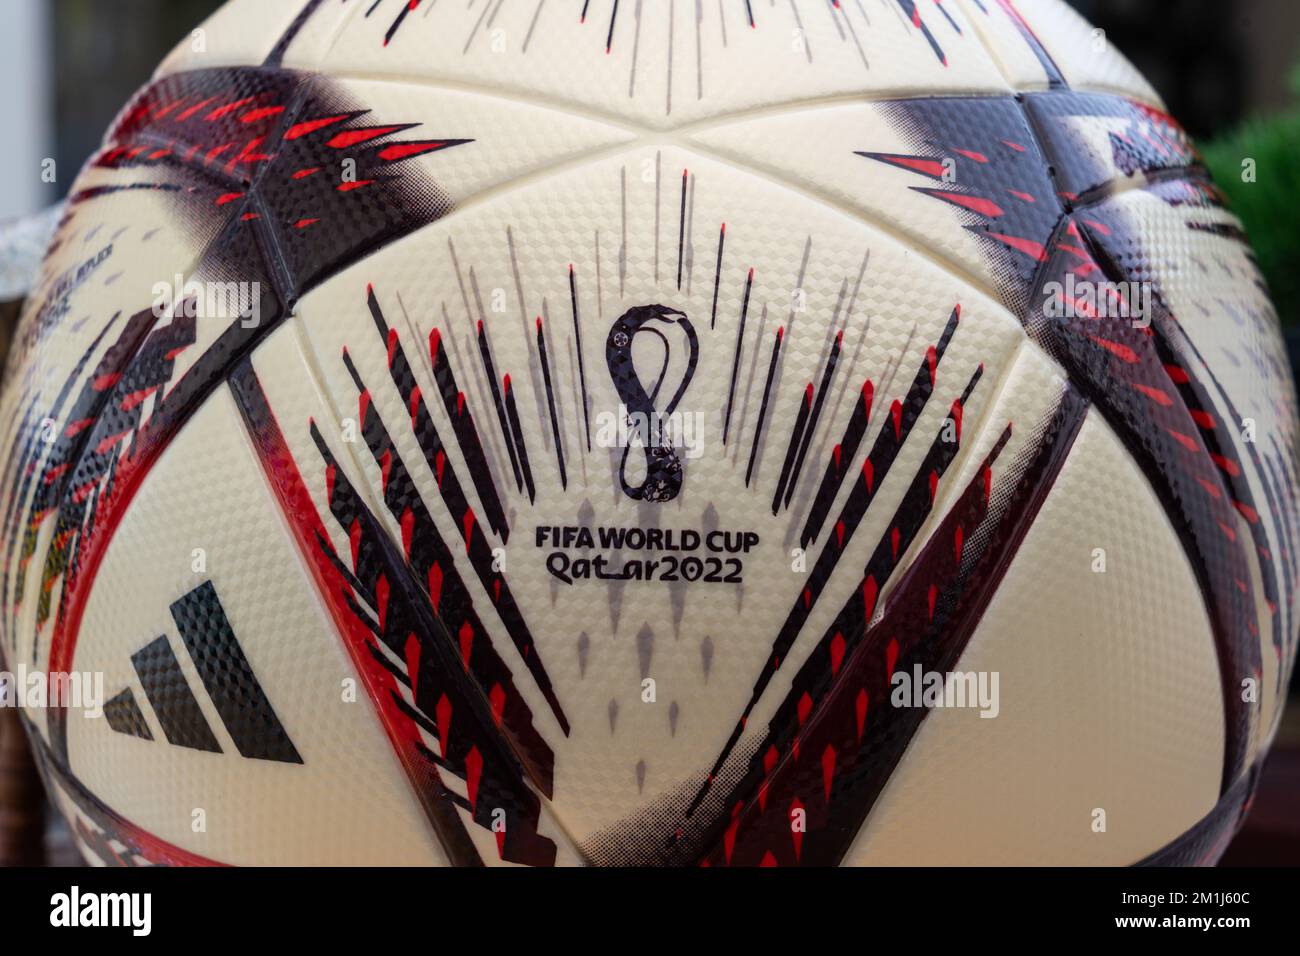 Gros plan sur le ballon adidas Al Hilm, qui est le ballon de match officiel utilisé dans les demi-finales et finale de la coupe du monde de la FIFA 2022 au Qatar. Banque D'Images